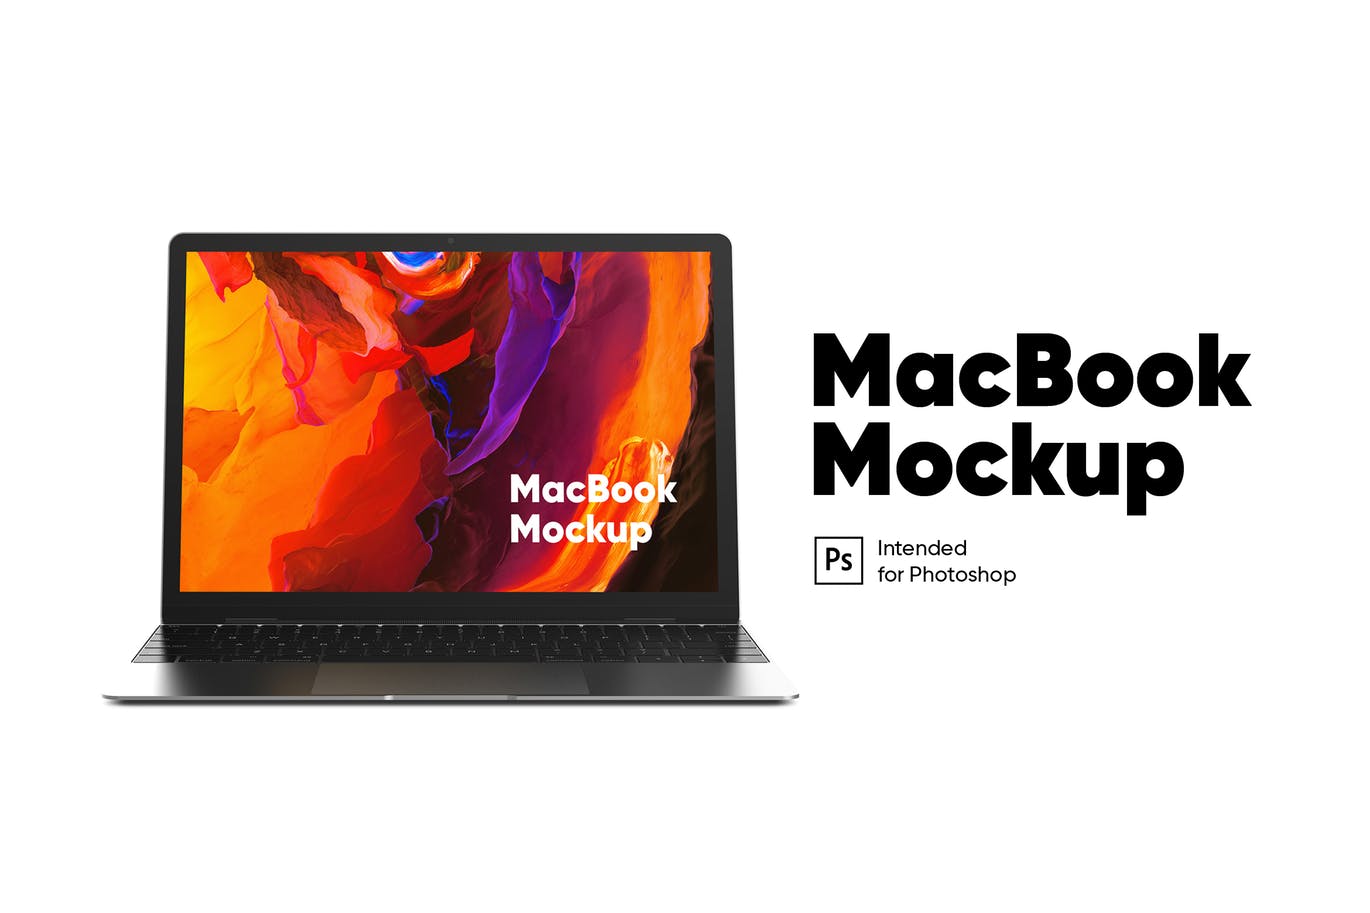 Macbook笔记本电脑屏幕演示前视图第一素材精选样机模板 MacBook Mockup front view插图